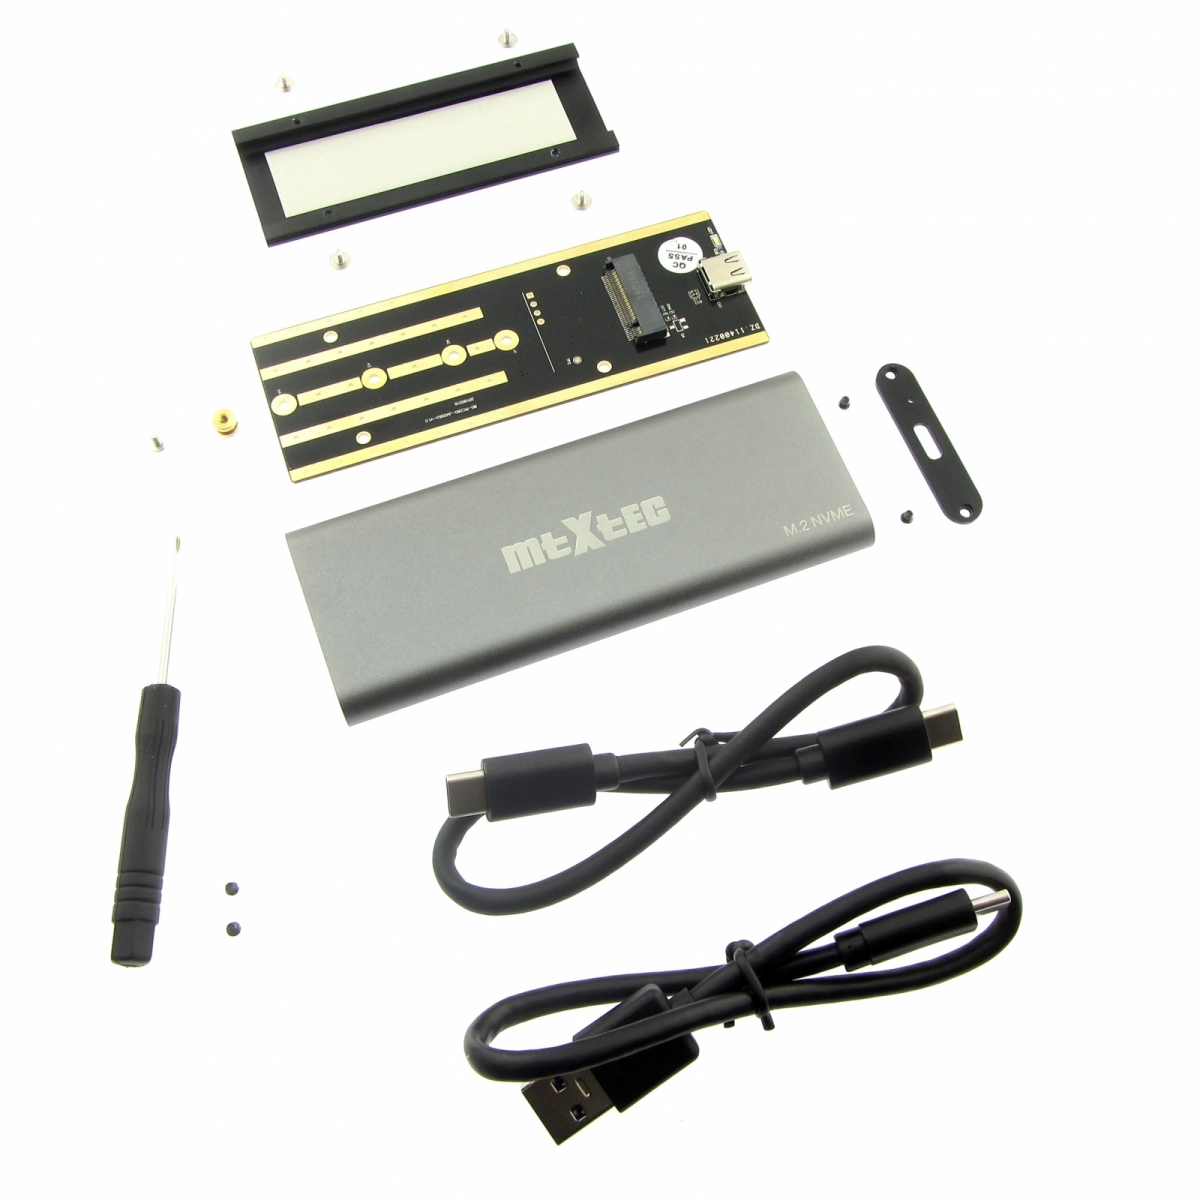 MTXtec externes Alu-Gehäuse für m.2 SSD mit NVMe Schnittstelle zu USB 3.1, silber